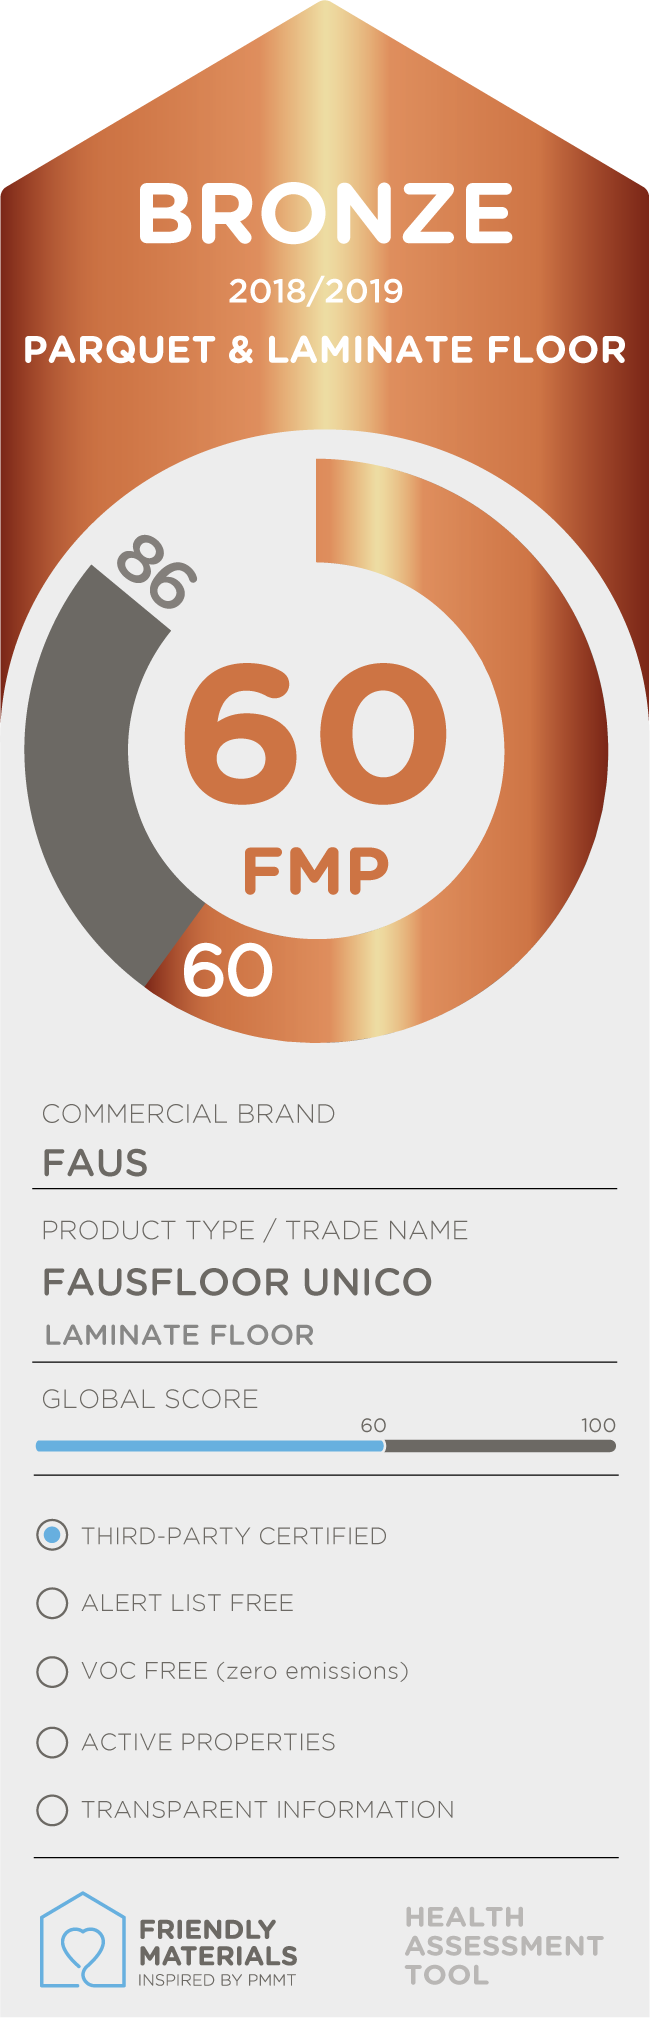 Fausfloor unico bronze 60